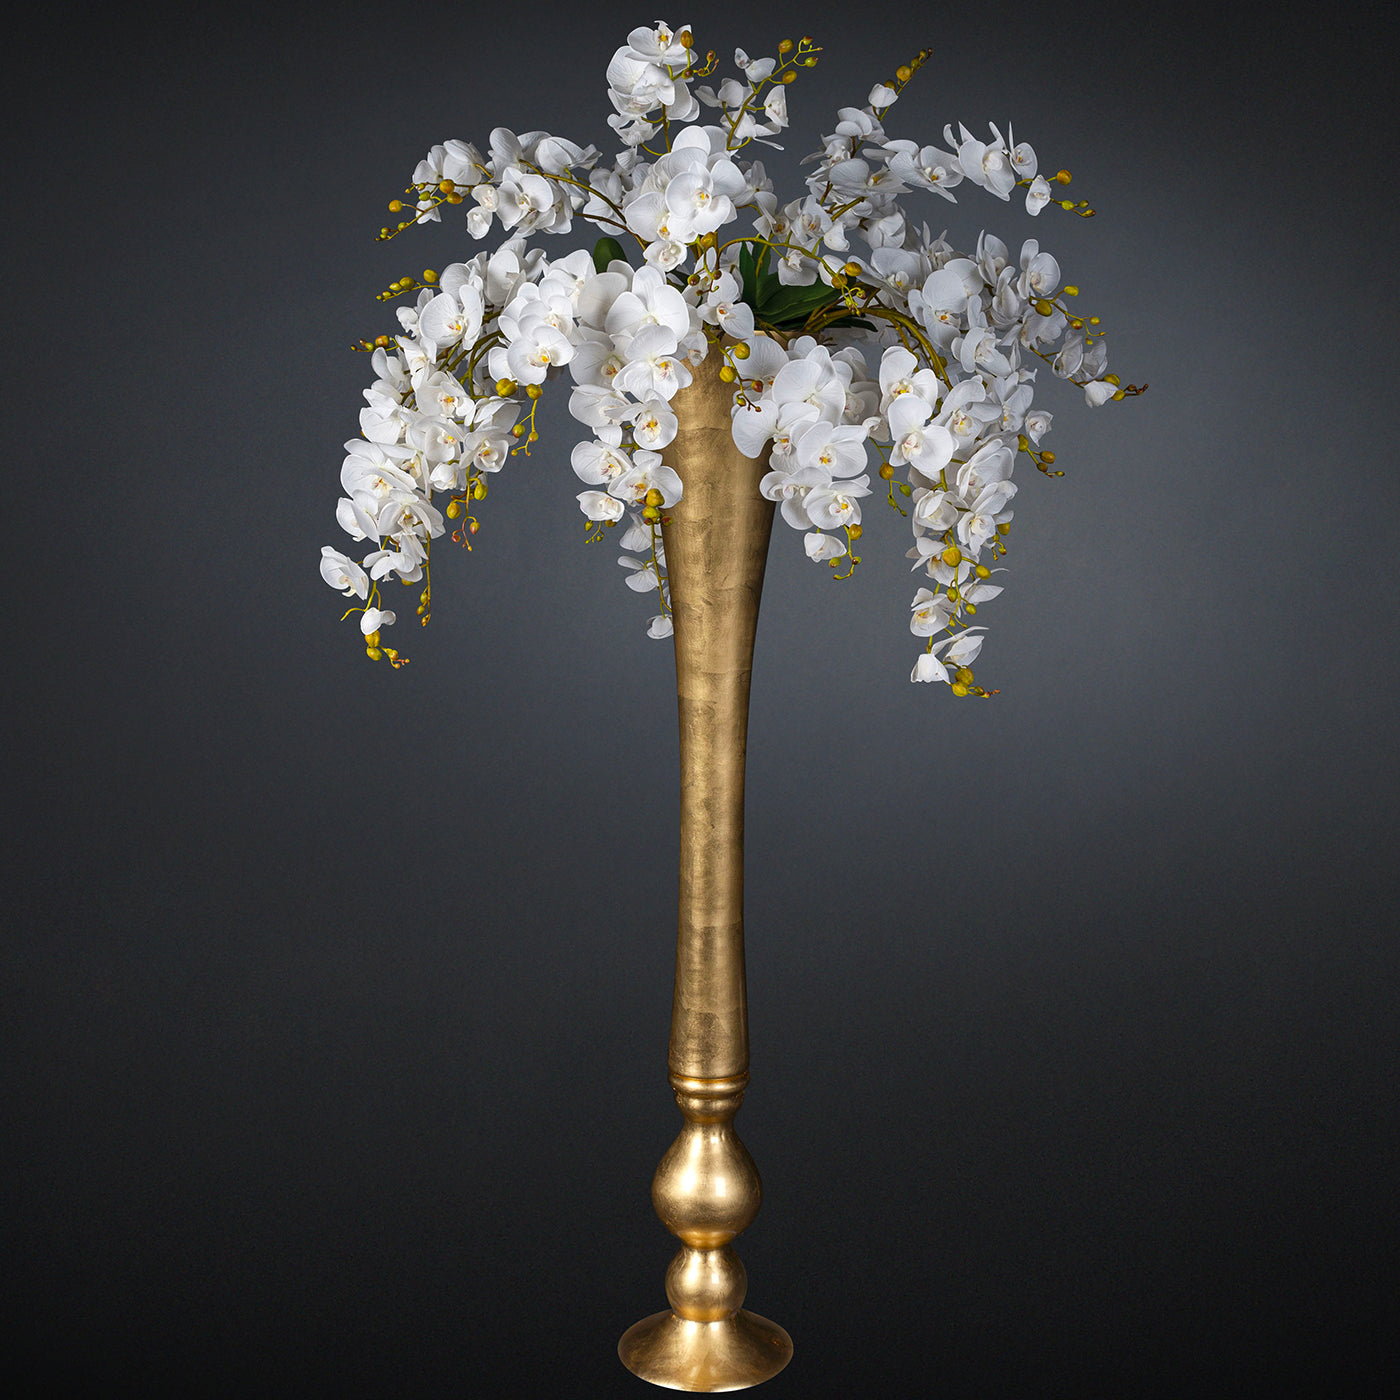 Eternity Madame Butterfly Composition florale avec vase en or - Vue alternative 1